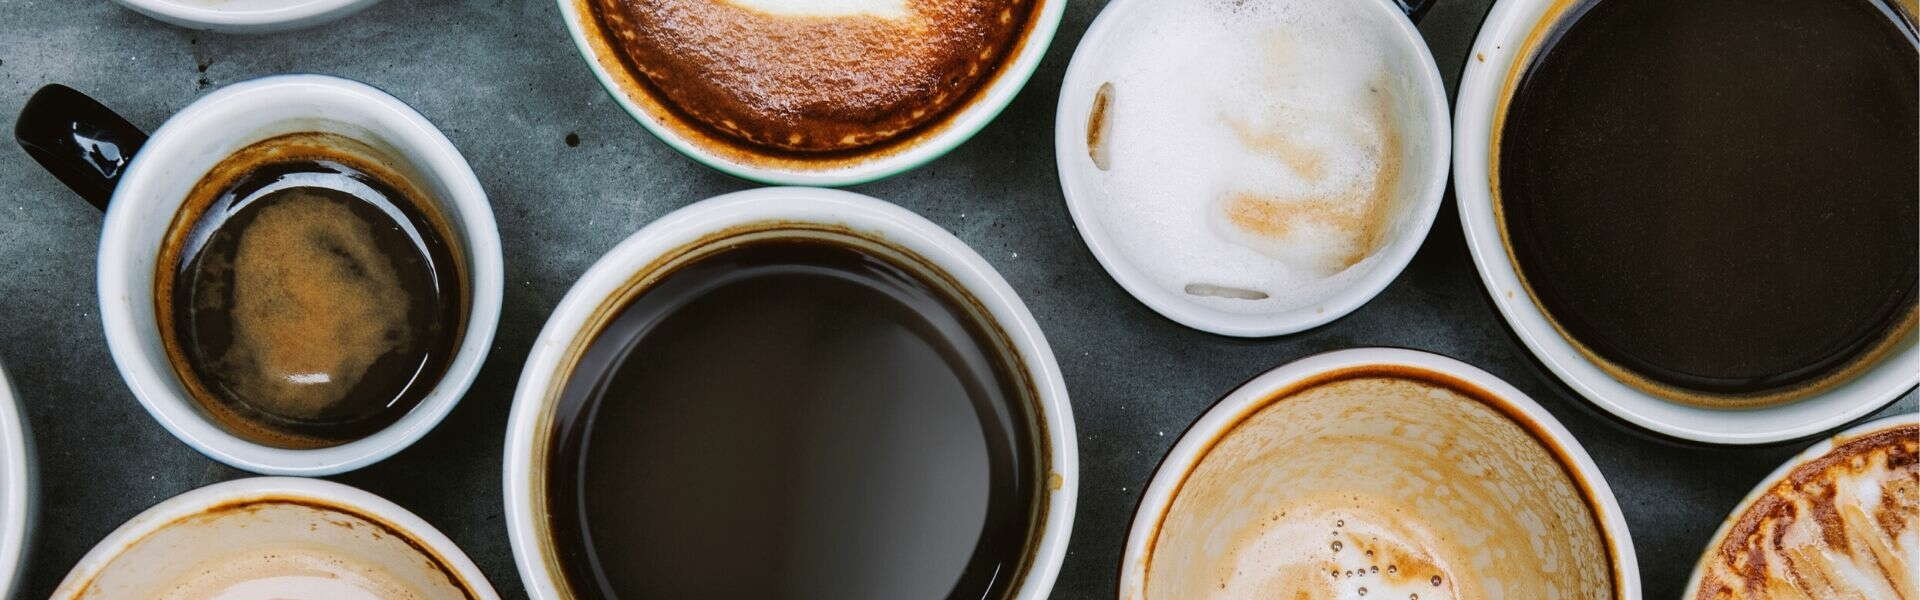 Caffè | Bere caffè fa bene o male alla salute?